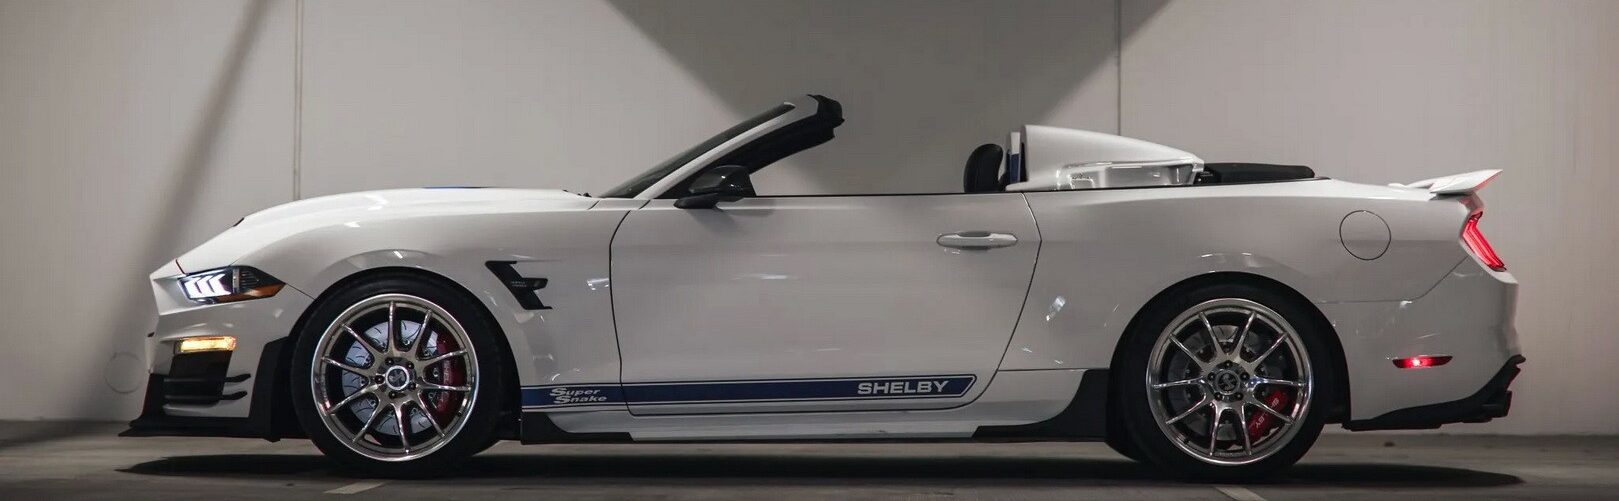 Редкий Ford Mustang Shelby Super Snake Speedster 2022 года — наполовину автобот, наполовину коллекционный предмет